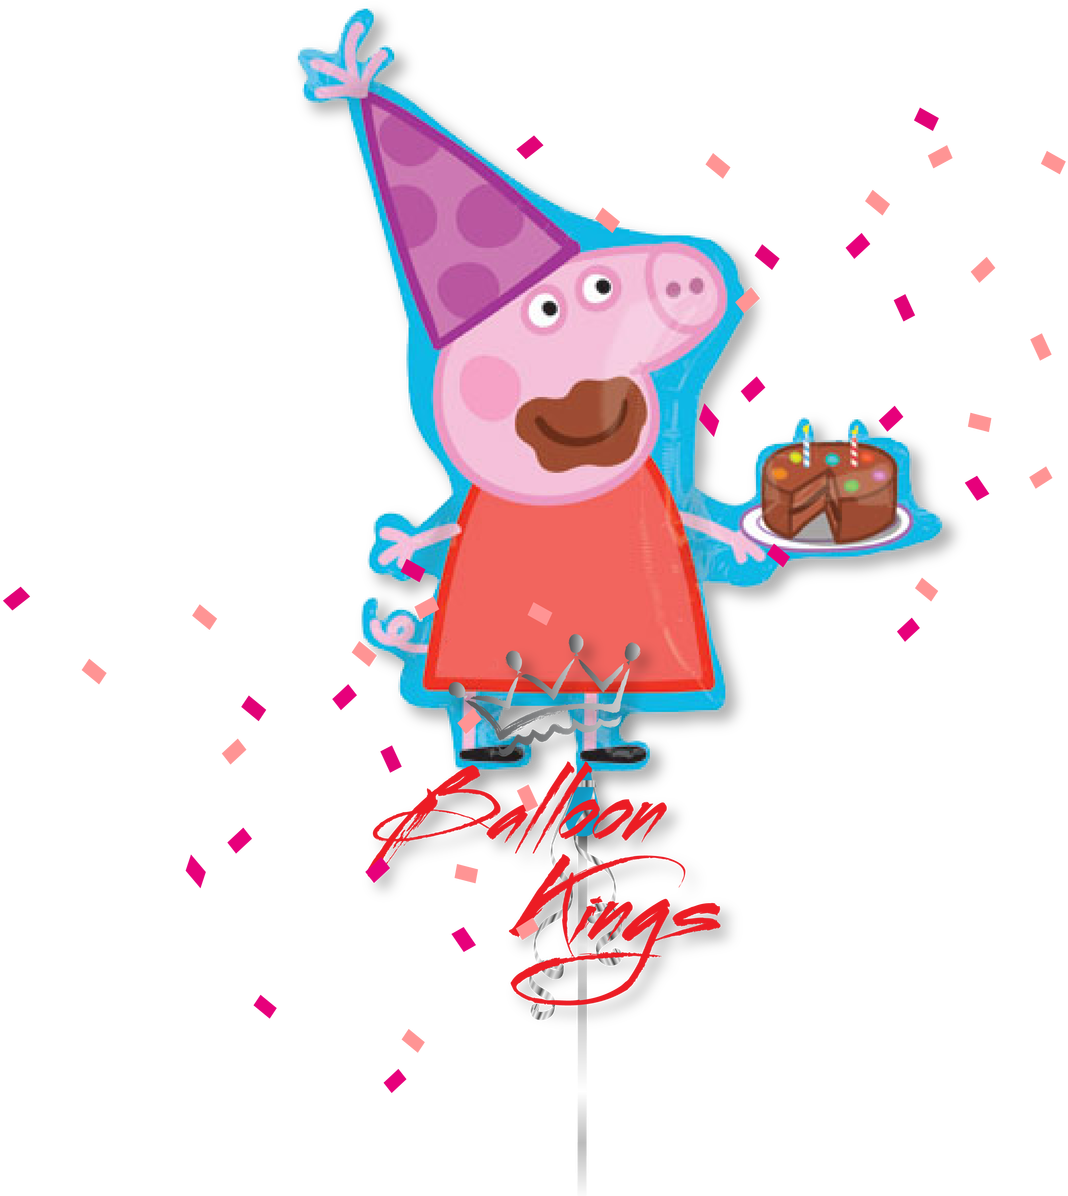 Peppa Pig - Peppa Pig Birthday (1280x1280)